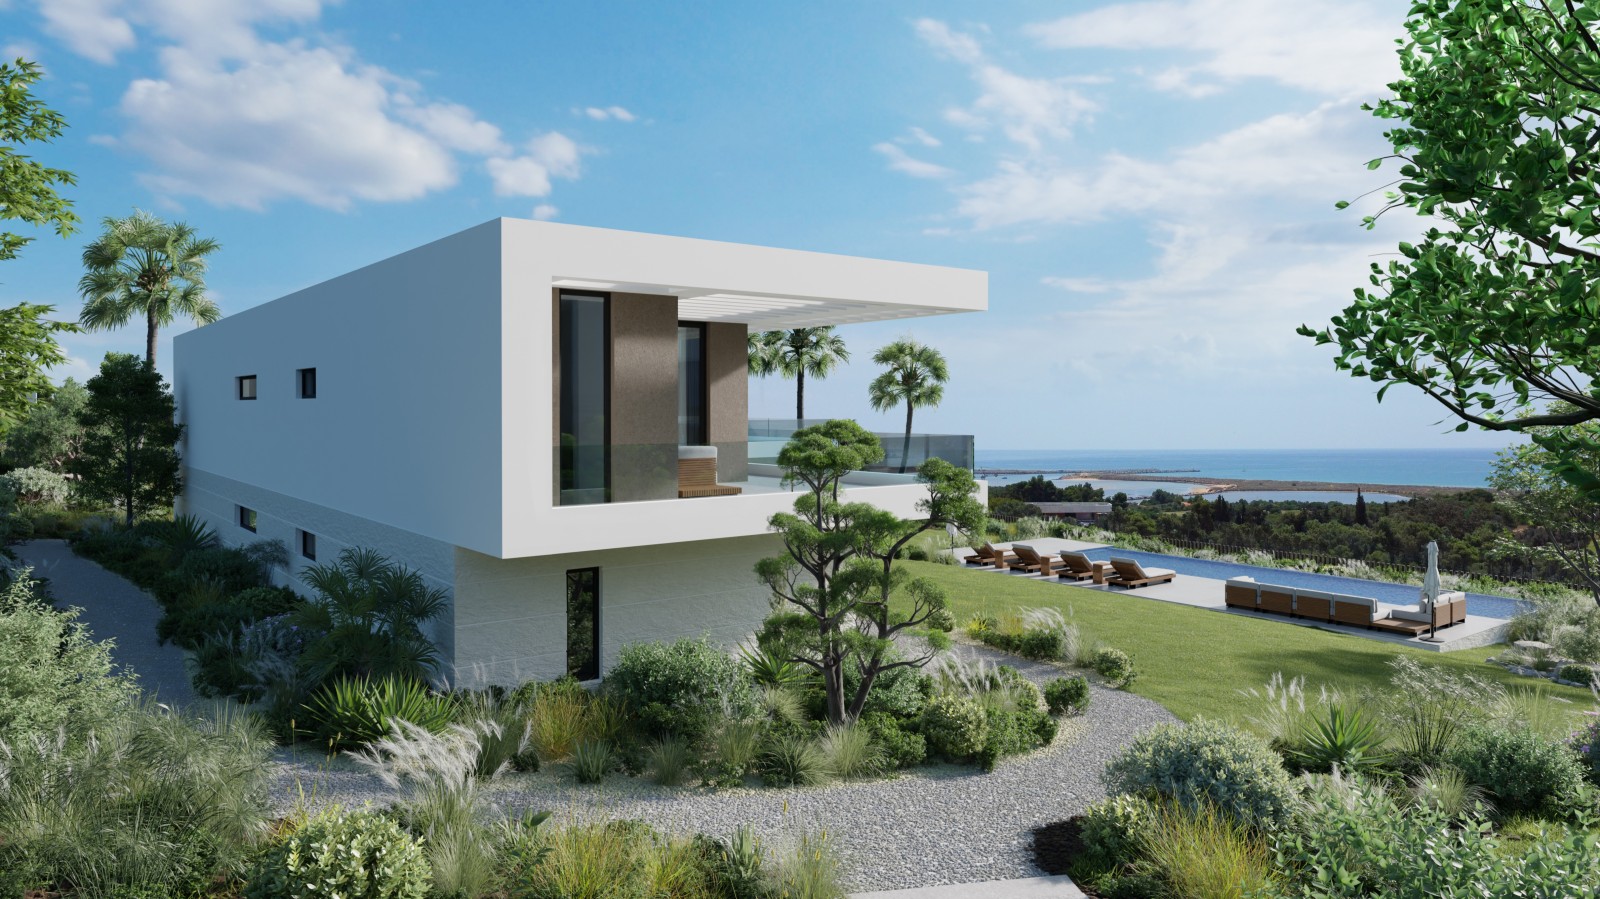 Moradia moderna V4 vista mar, localizada no Golf Resort Palmares, Algarve_261037